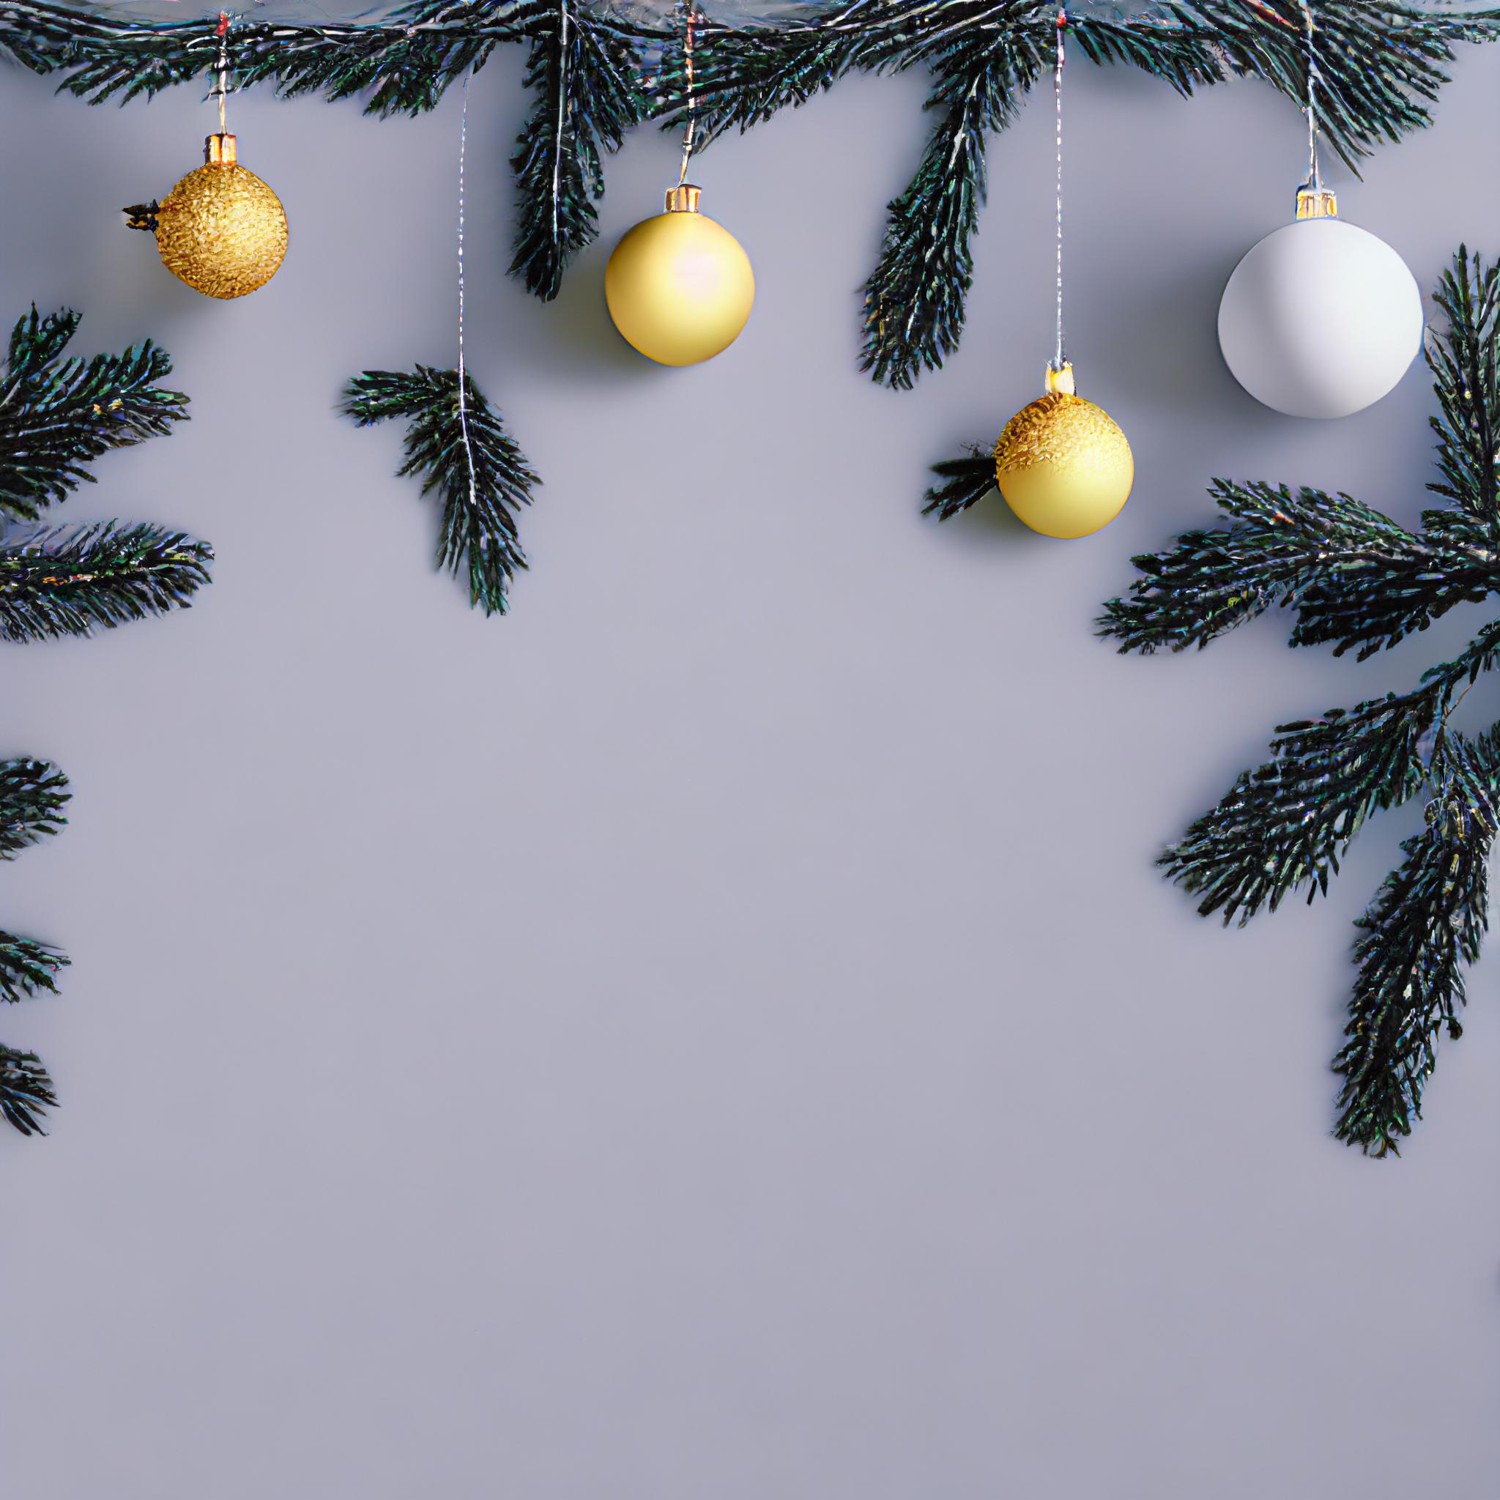 Giáng sinh đang đến gần, hãy tạo cho mình những bức hình mang đầy không khí lễ hội với những Christmas backgrounds tuyệt đẹp. Chỉ cần một vài thao tác đơn giản, bạn đã có thể tạo ra những tác phẩm độc đáo.